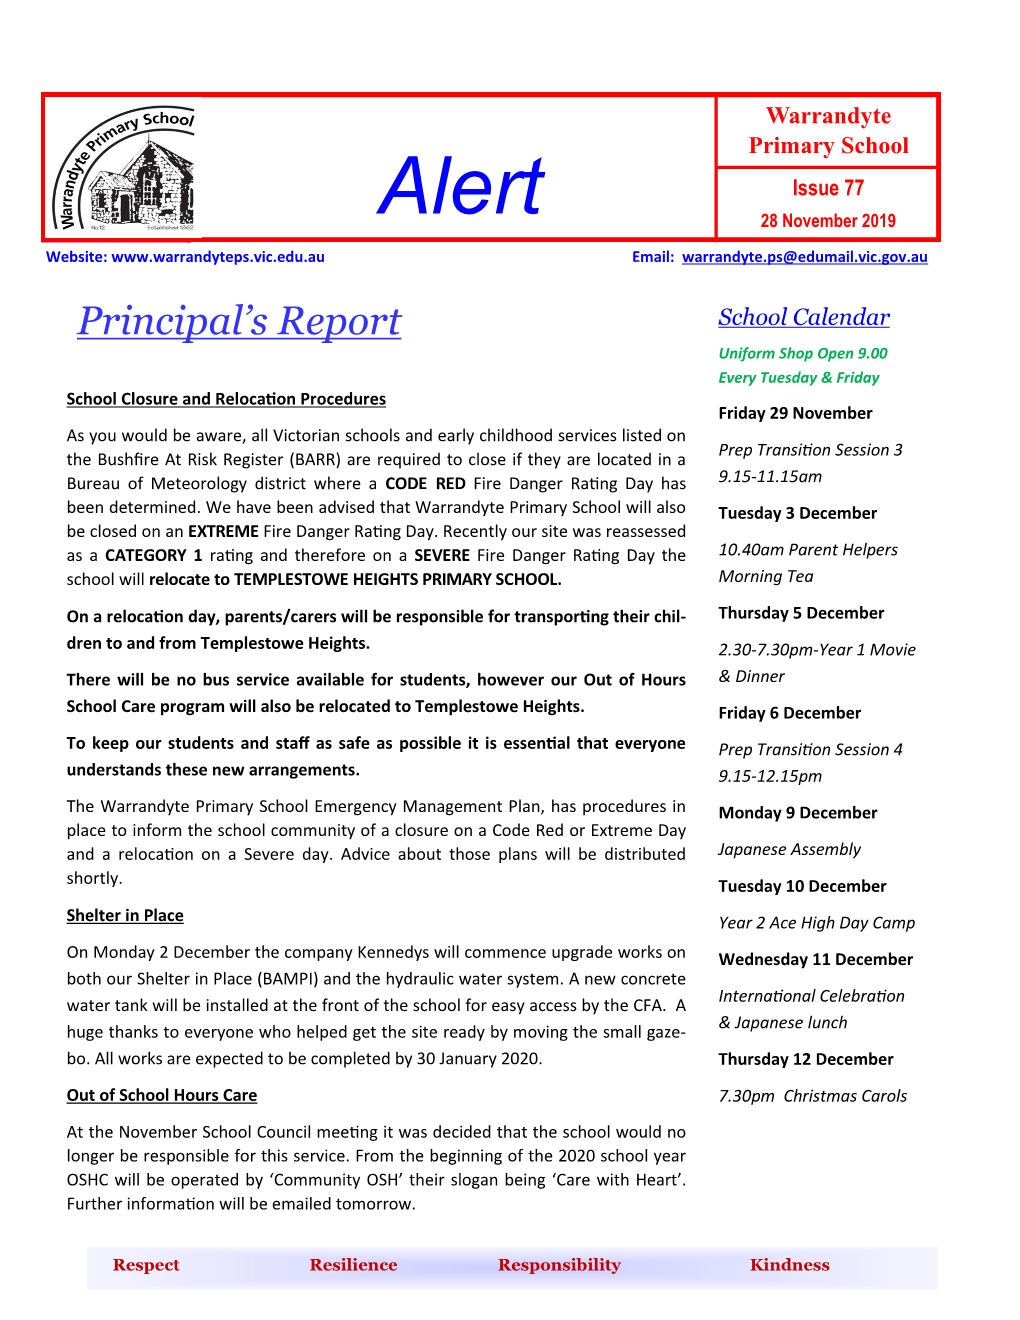 Principal's Report